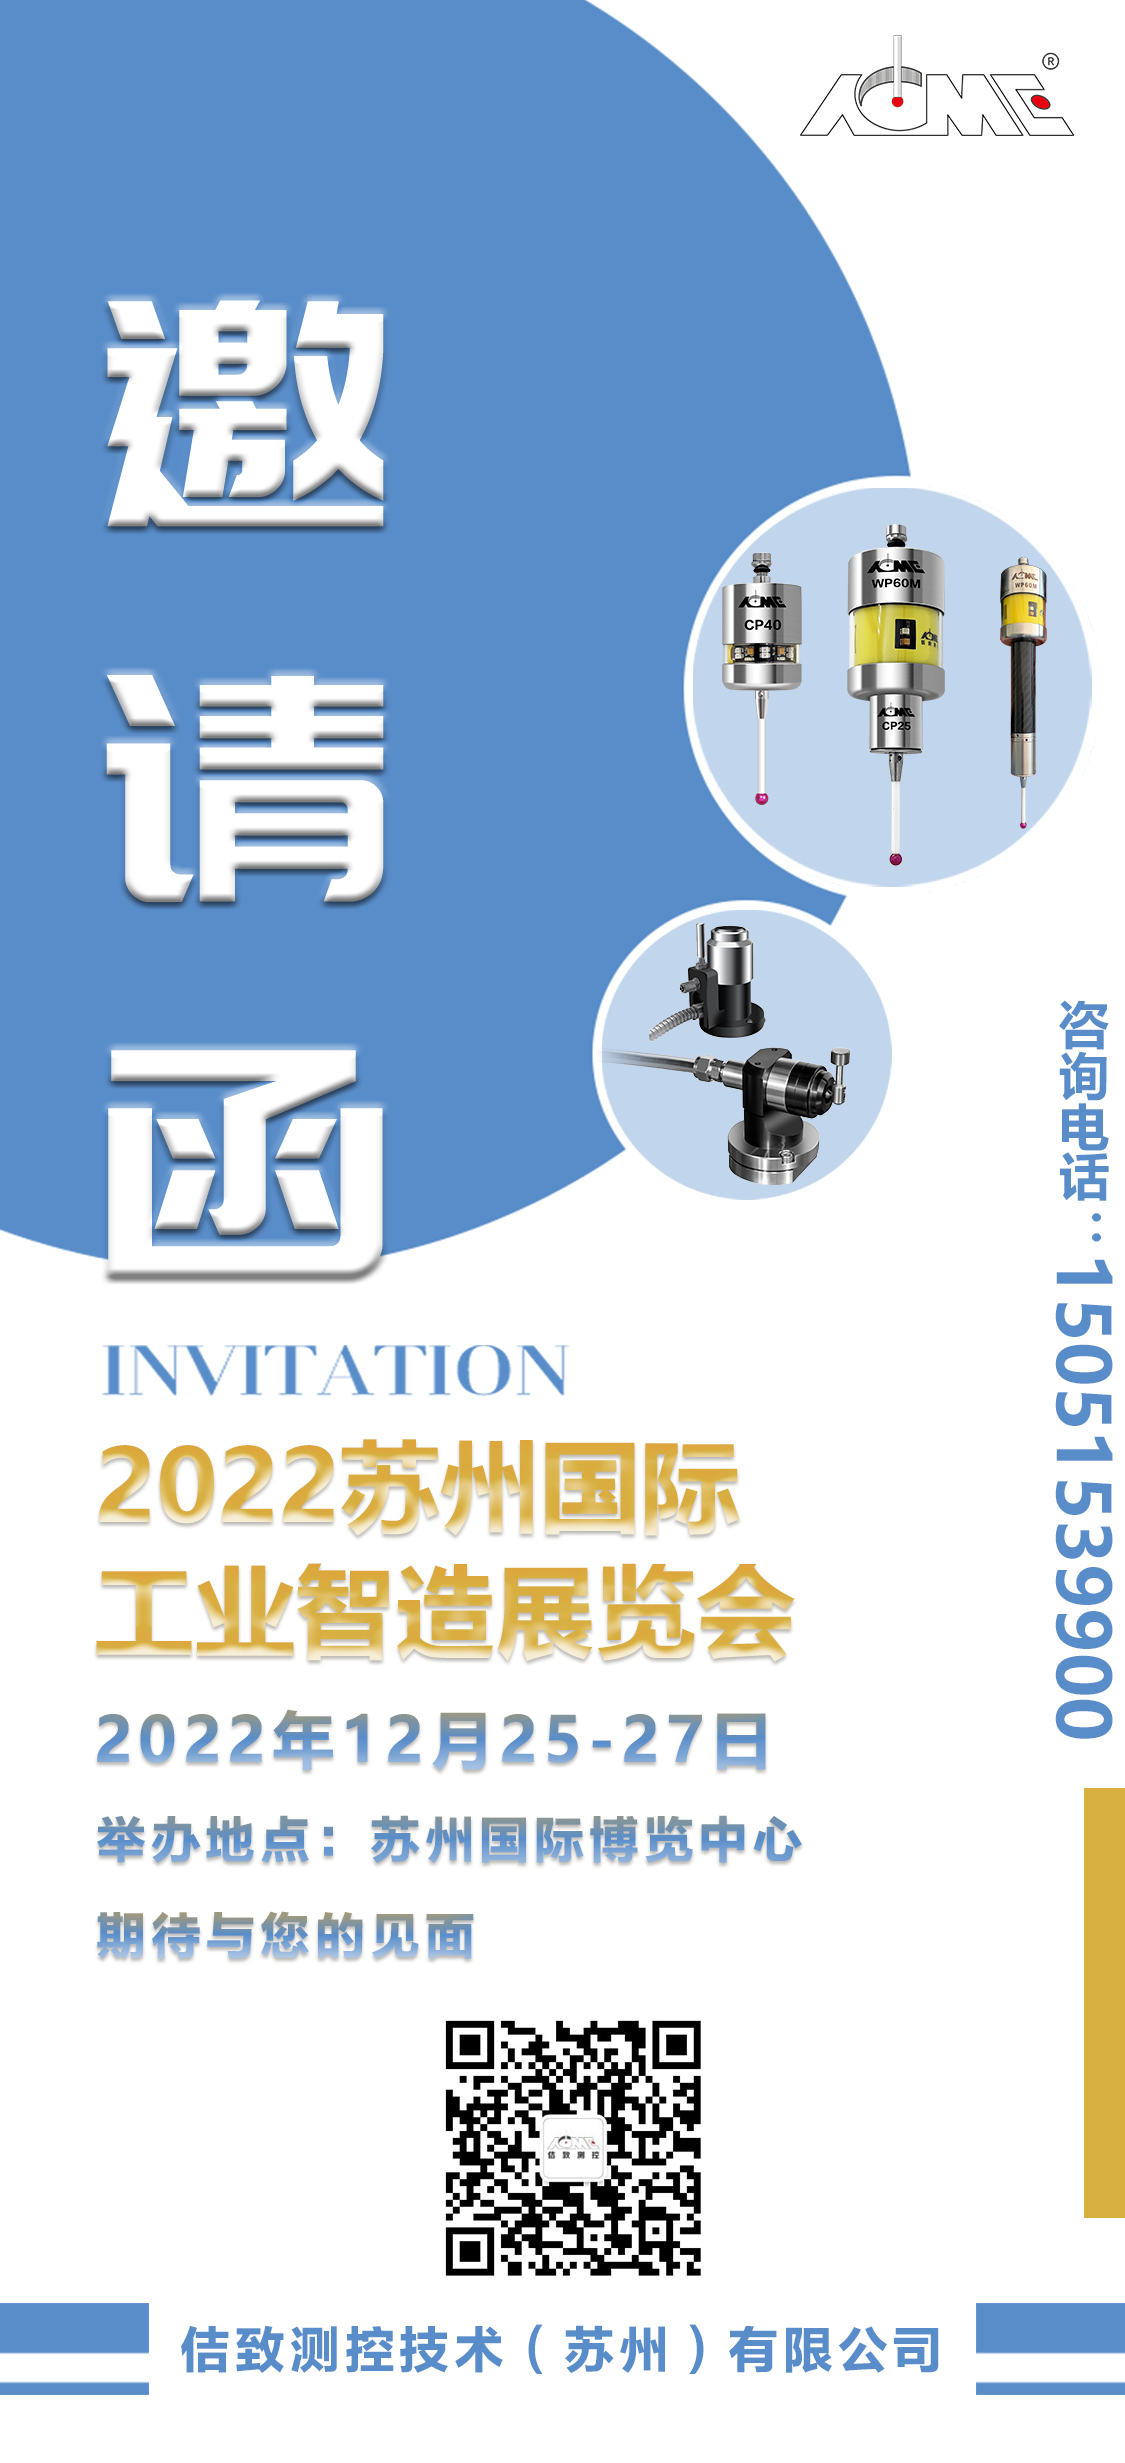 Meghívó a 2022-es Suzhou Nemzetközi Ipari Intelligens Gyártási Kiállításra (6)